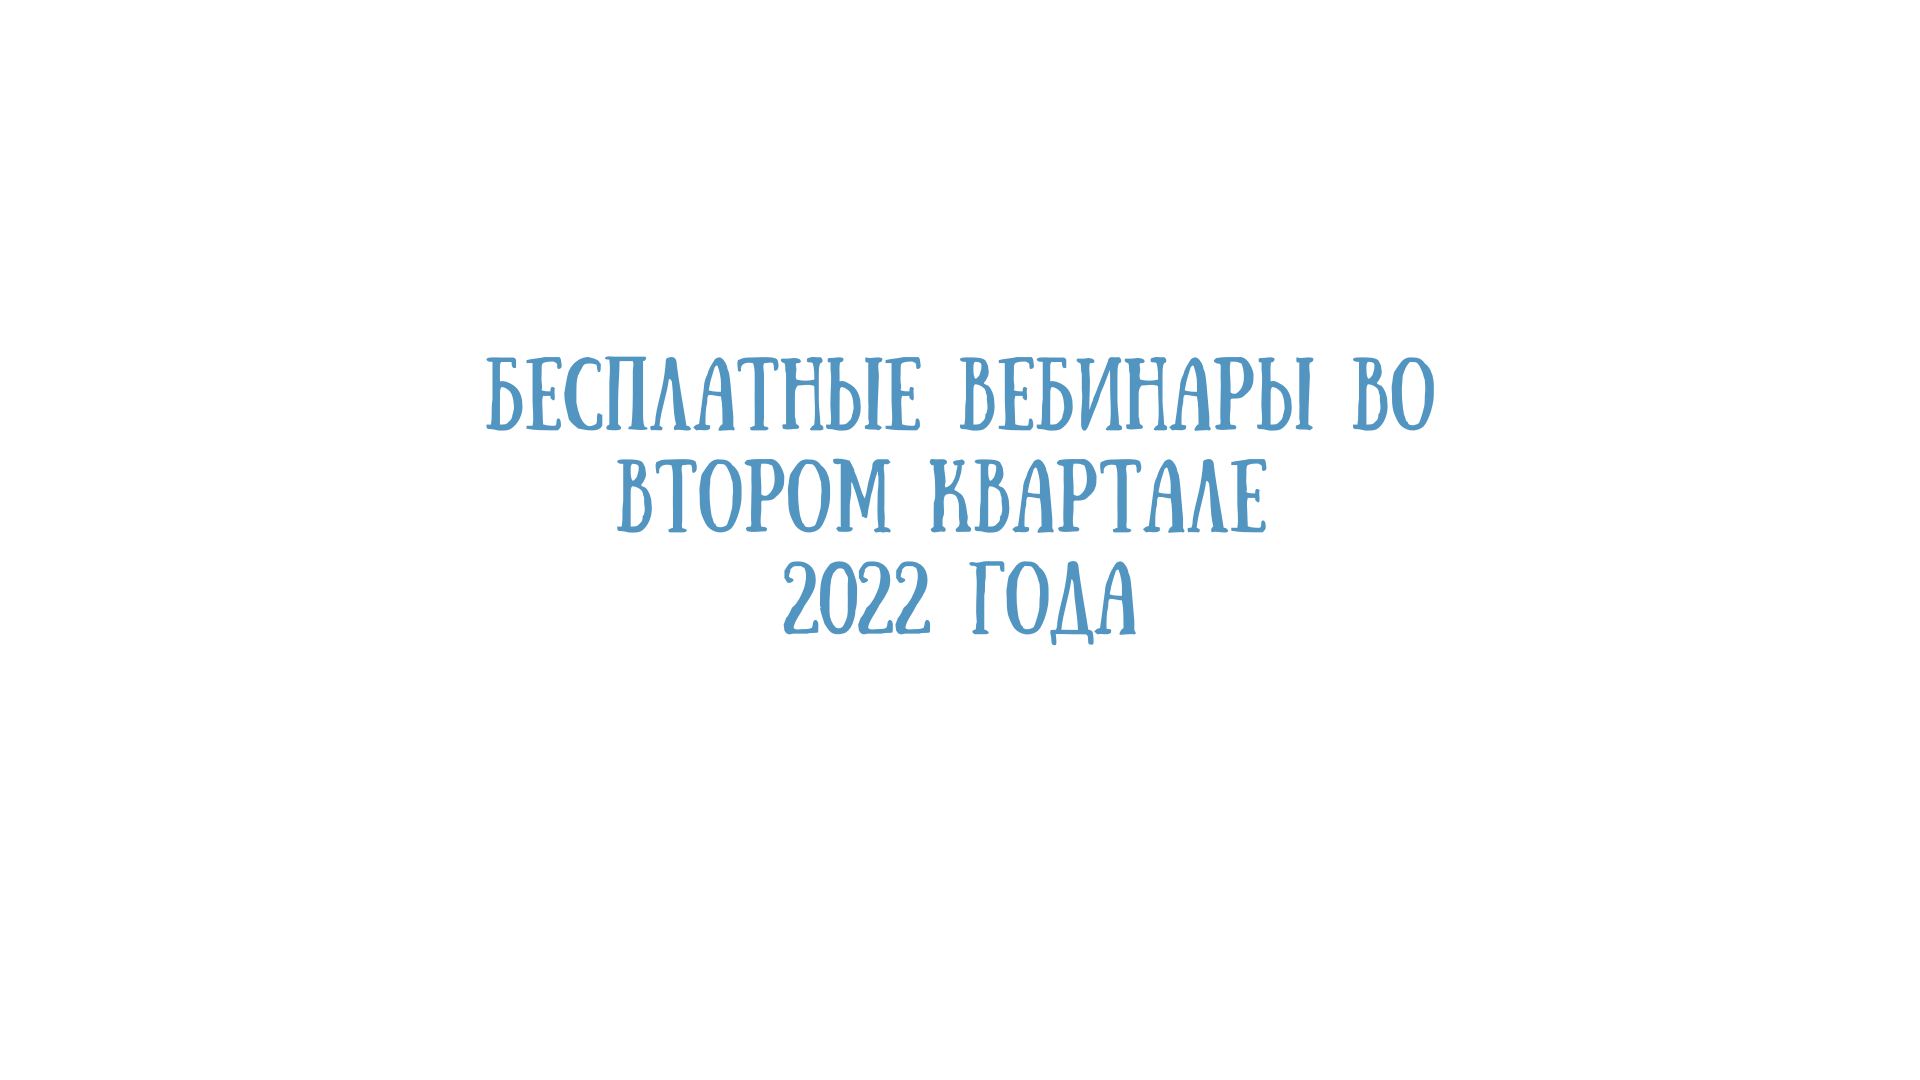 Бесплатные вебинары во втором квартале 2022 года